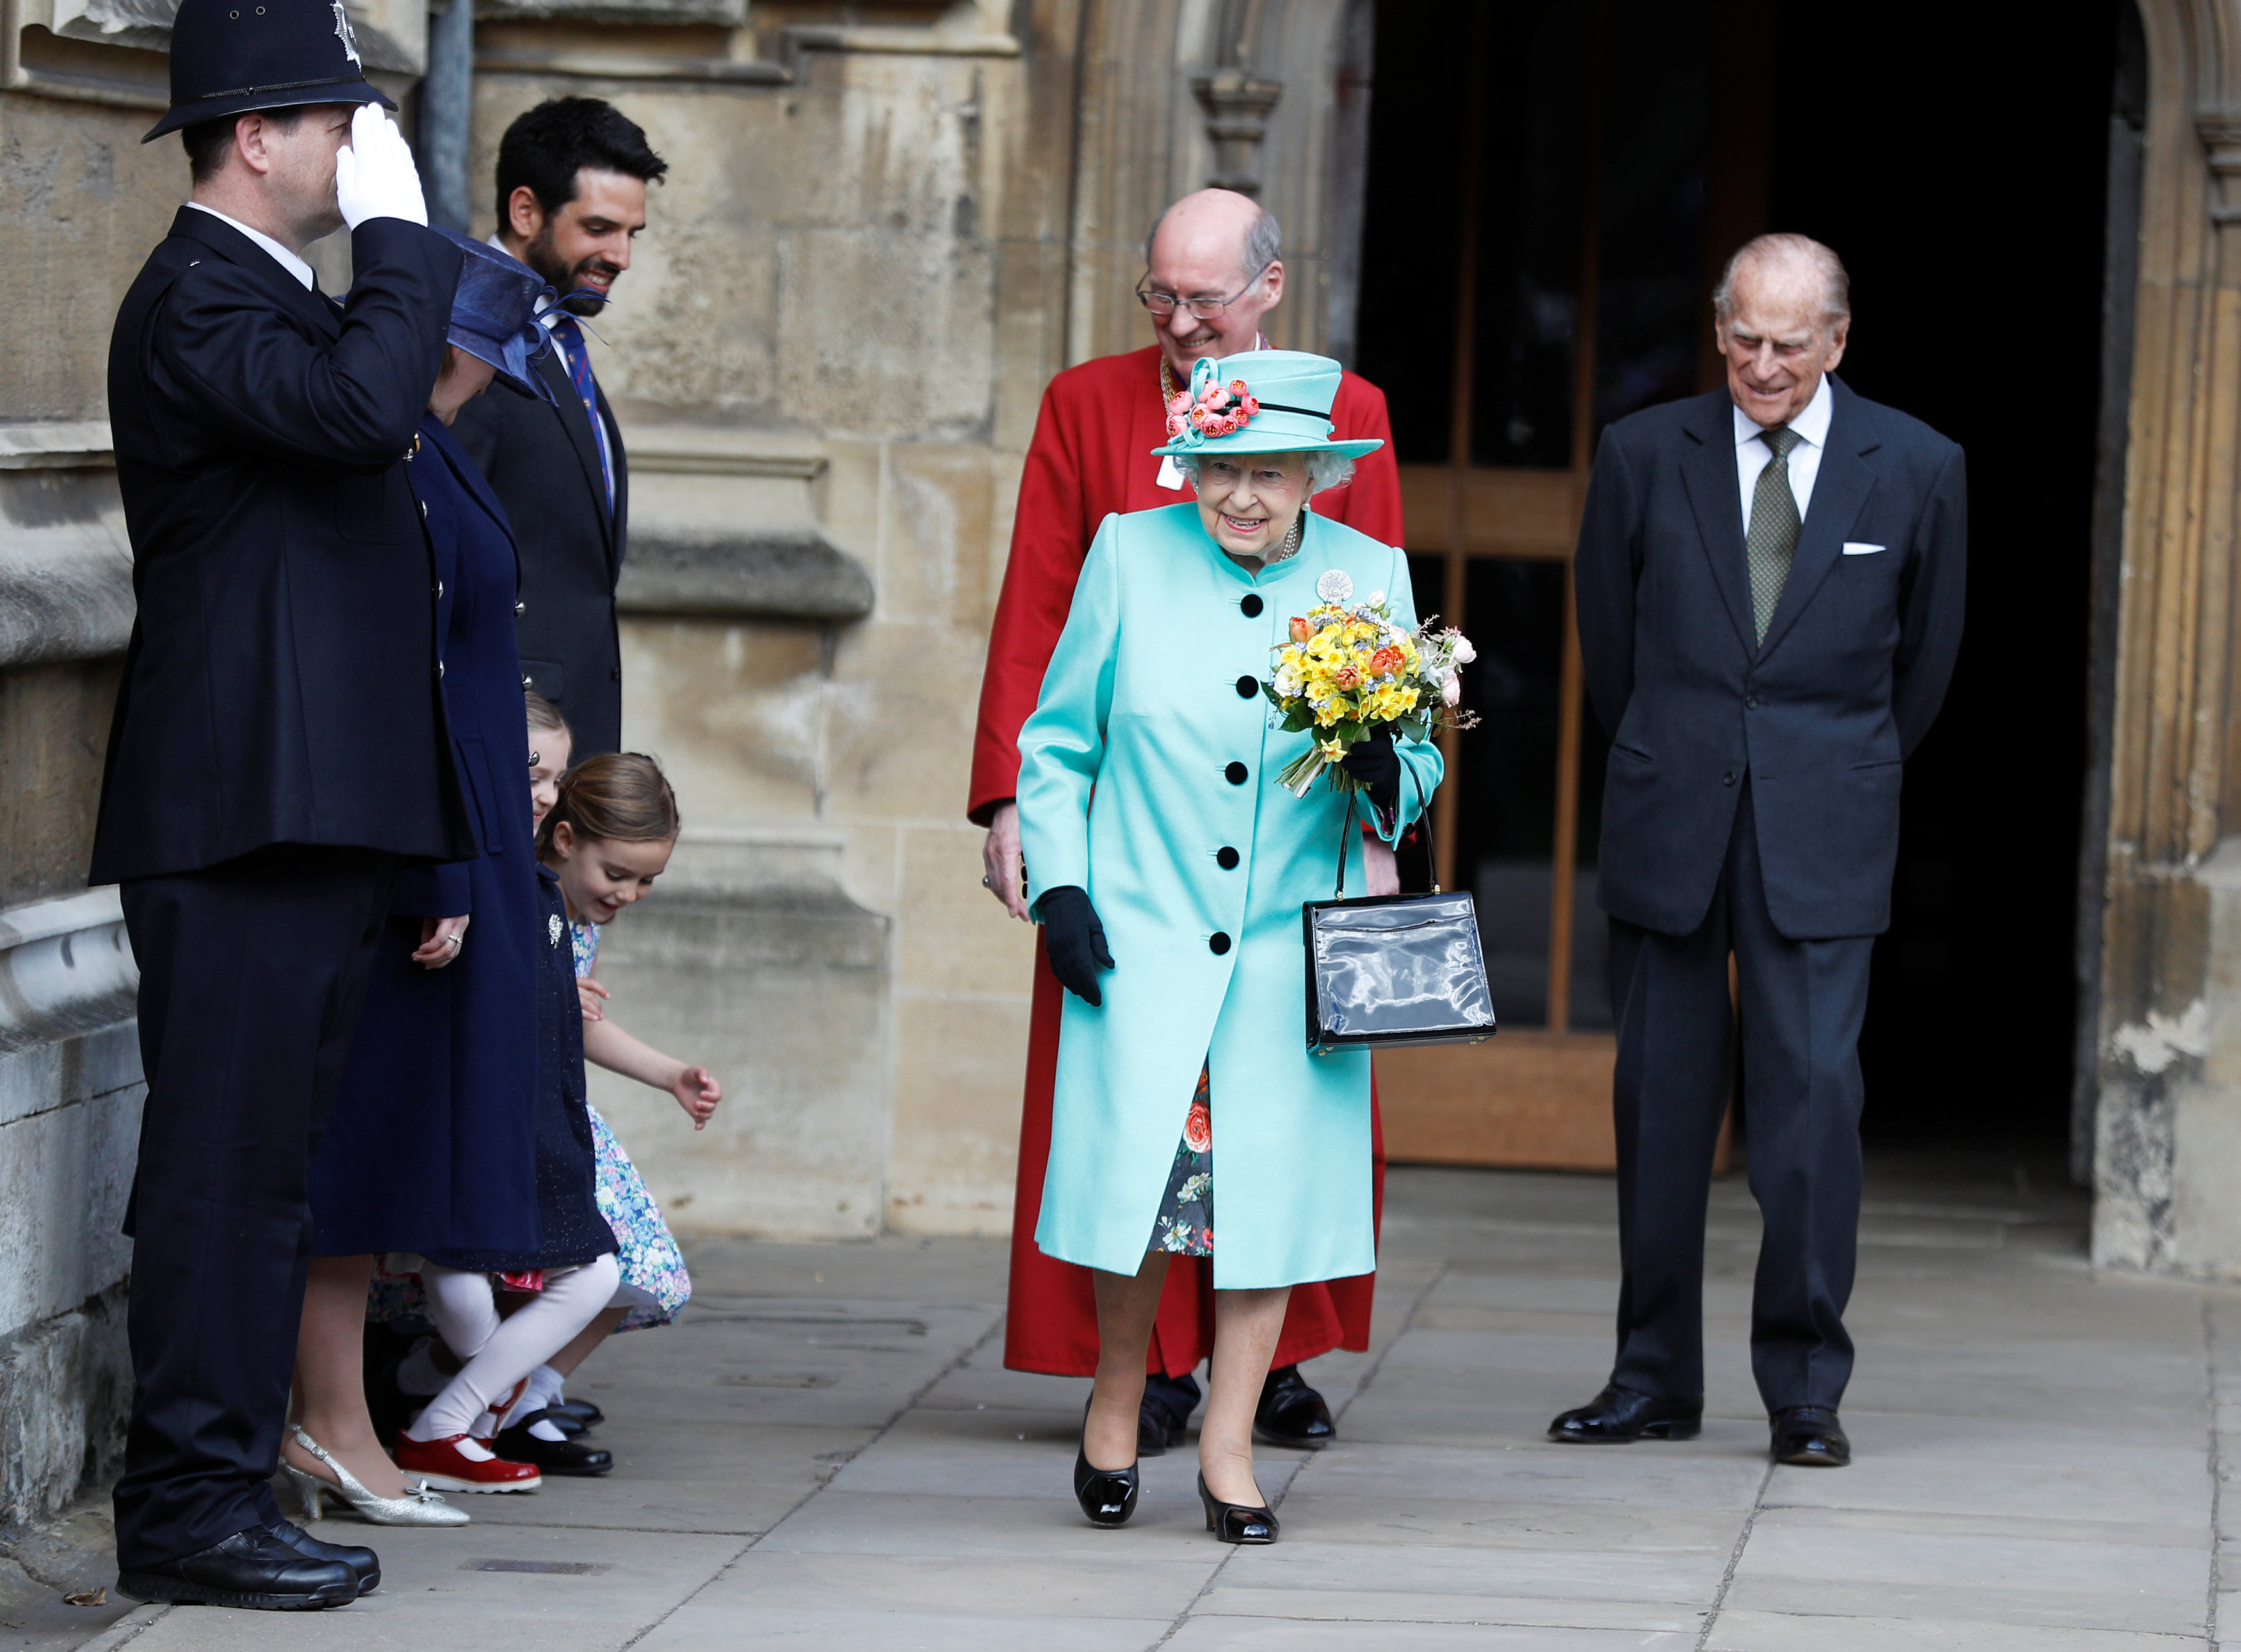 Τα 91 κλείνει σήμερα η βασίλισσα Ελισάβετ και χαίρει άκρας υγείας